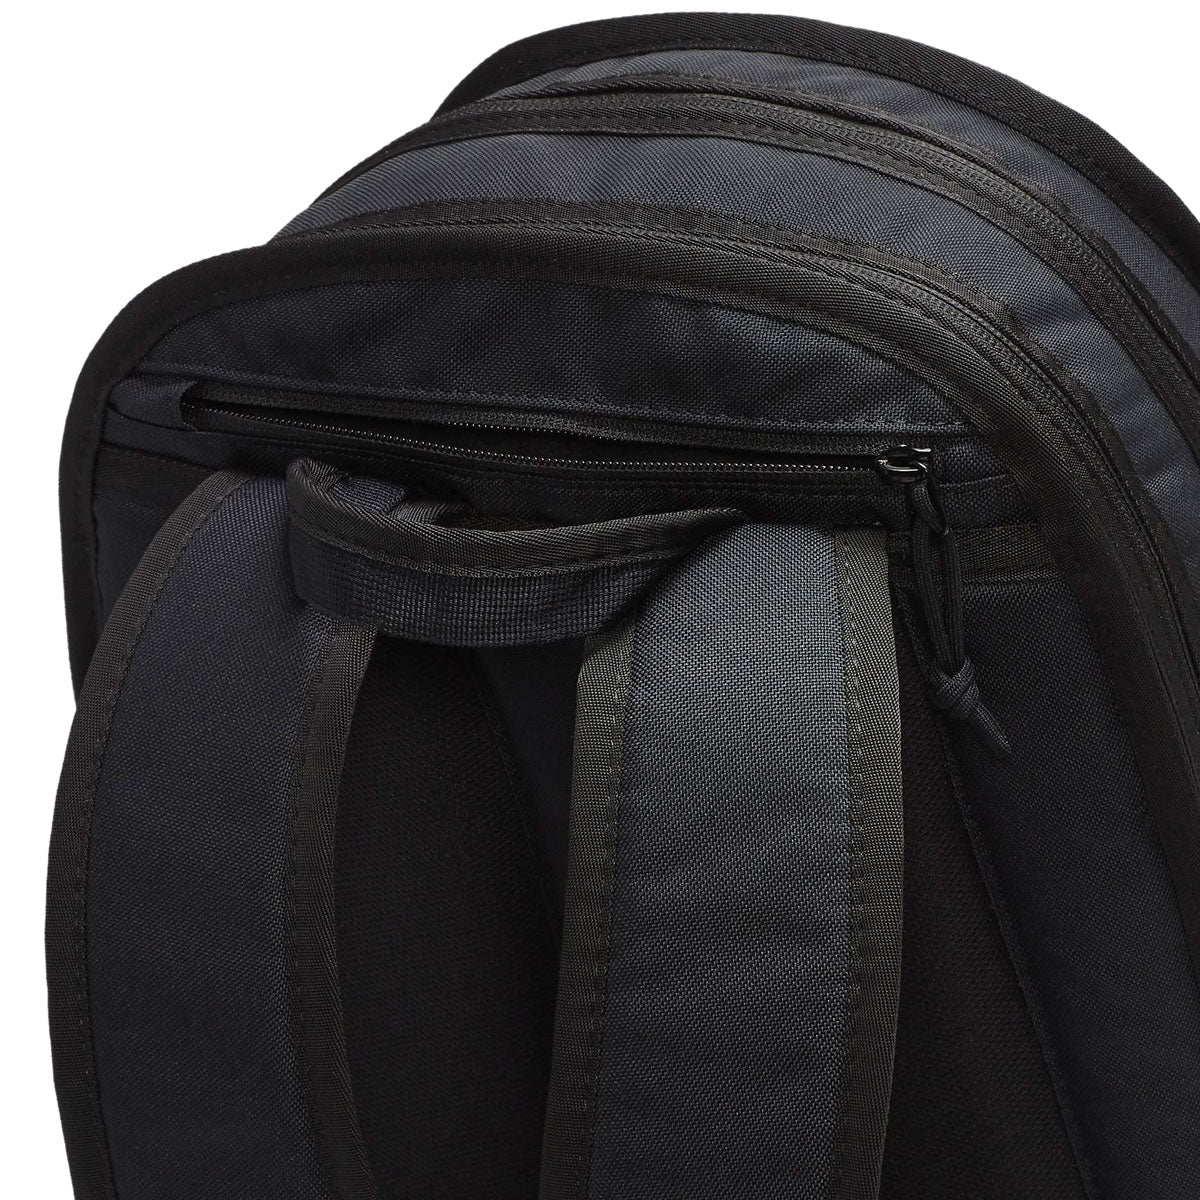 Nike SB Sportswear RPM Backpack - Black/Black/White image 5